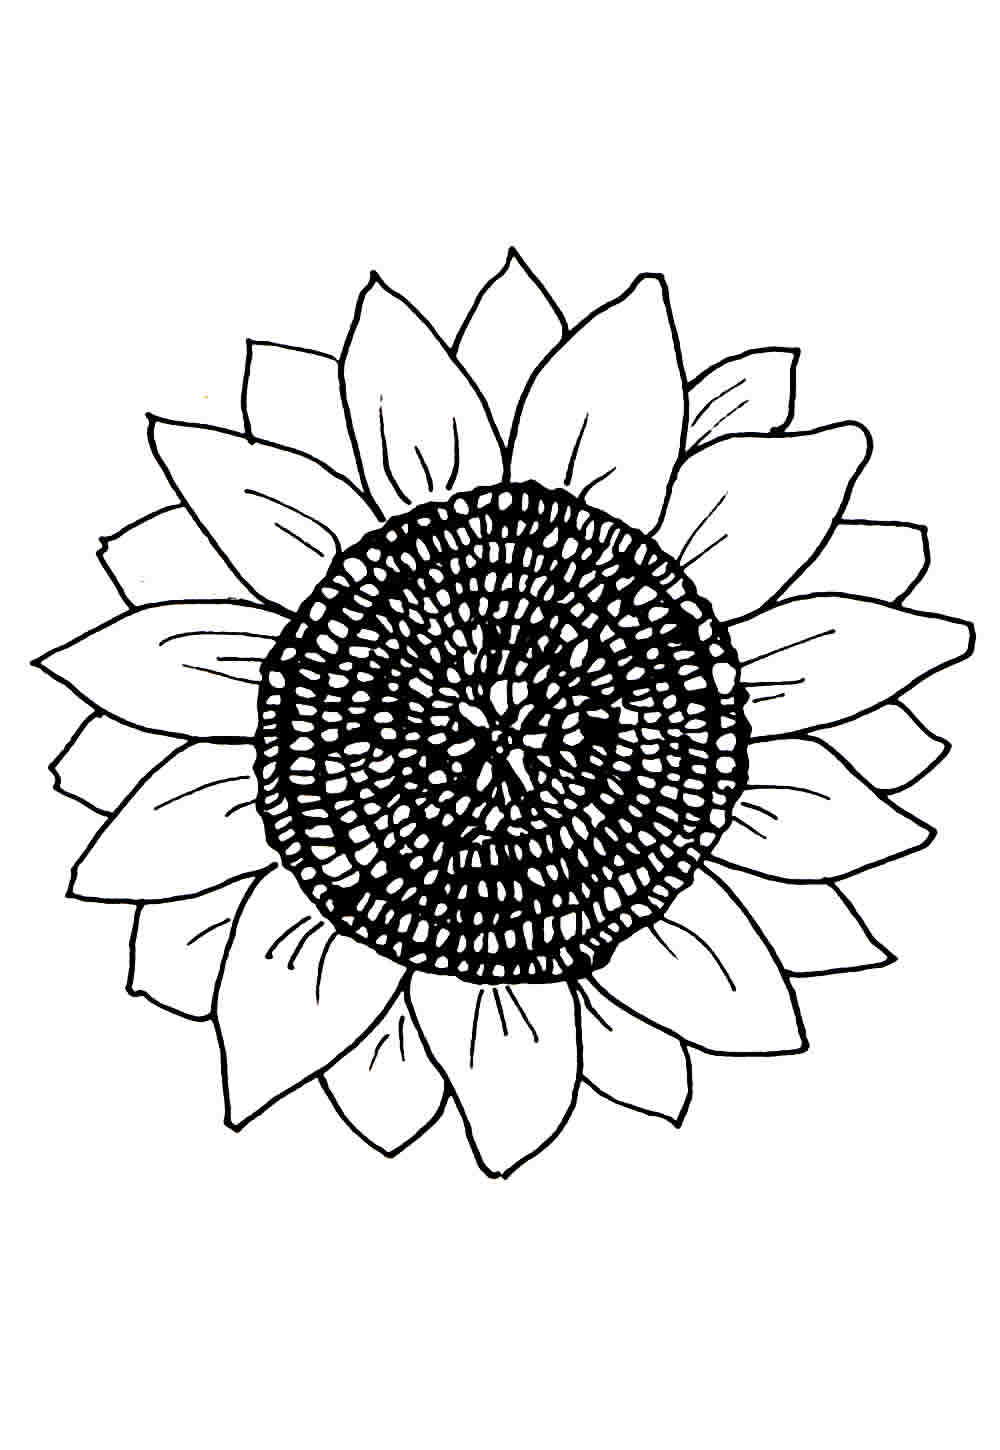 Desenho de flor para pintar e colorir - GIrassol